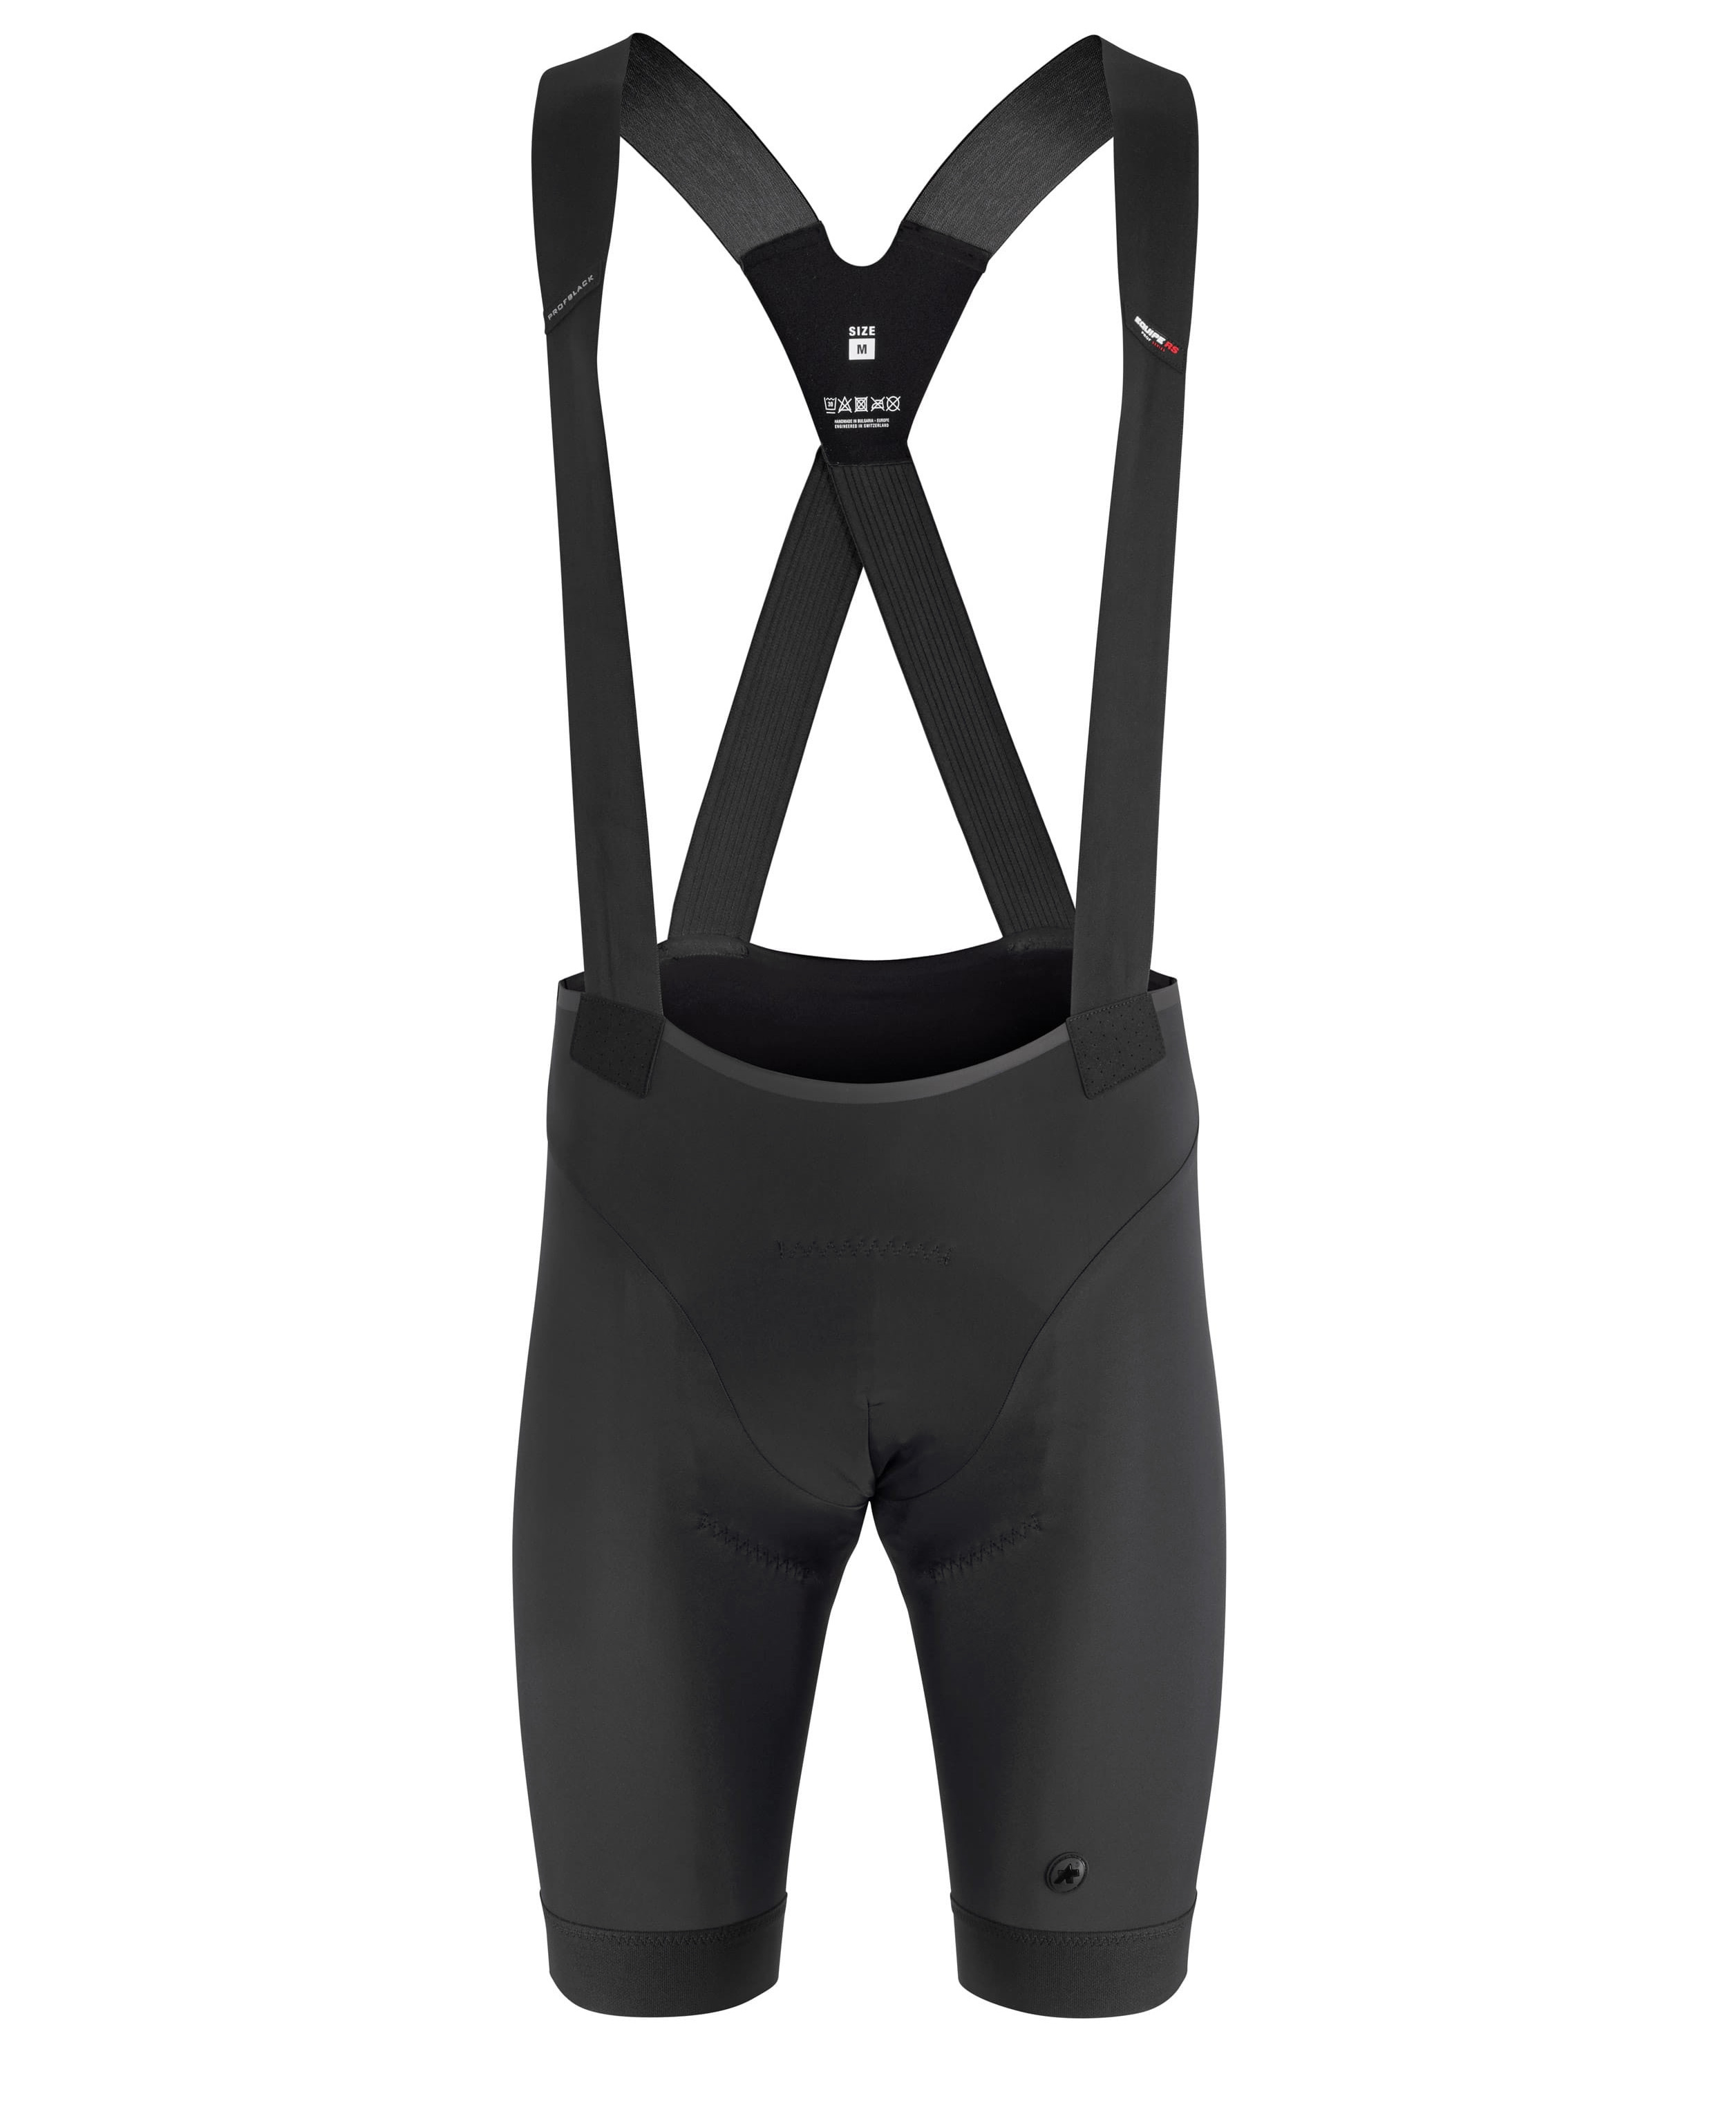 Велотрусы ASSOS Equipe RS Bib, на лямках, мужские, черные с черным логотипом, XL 